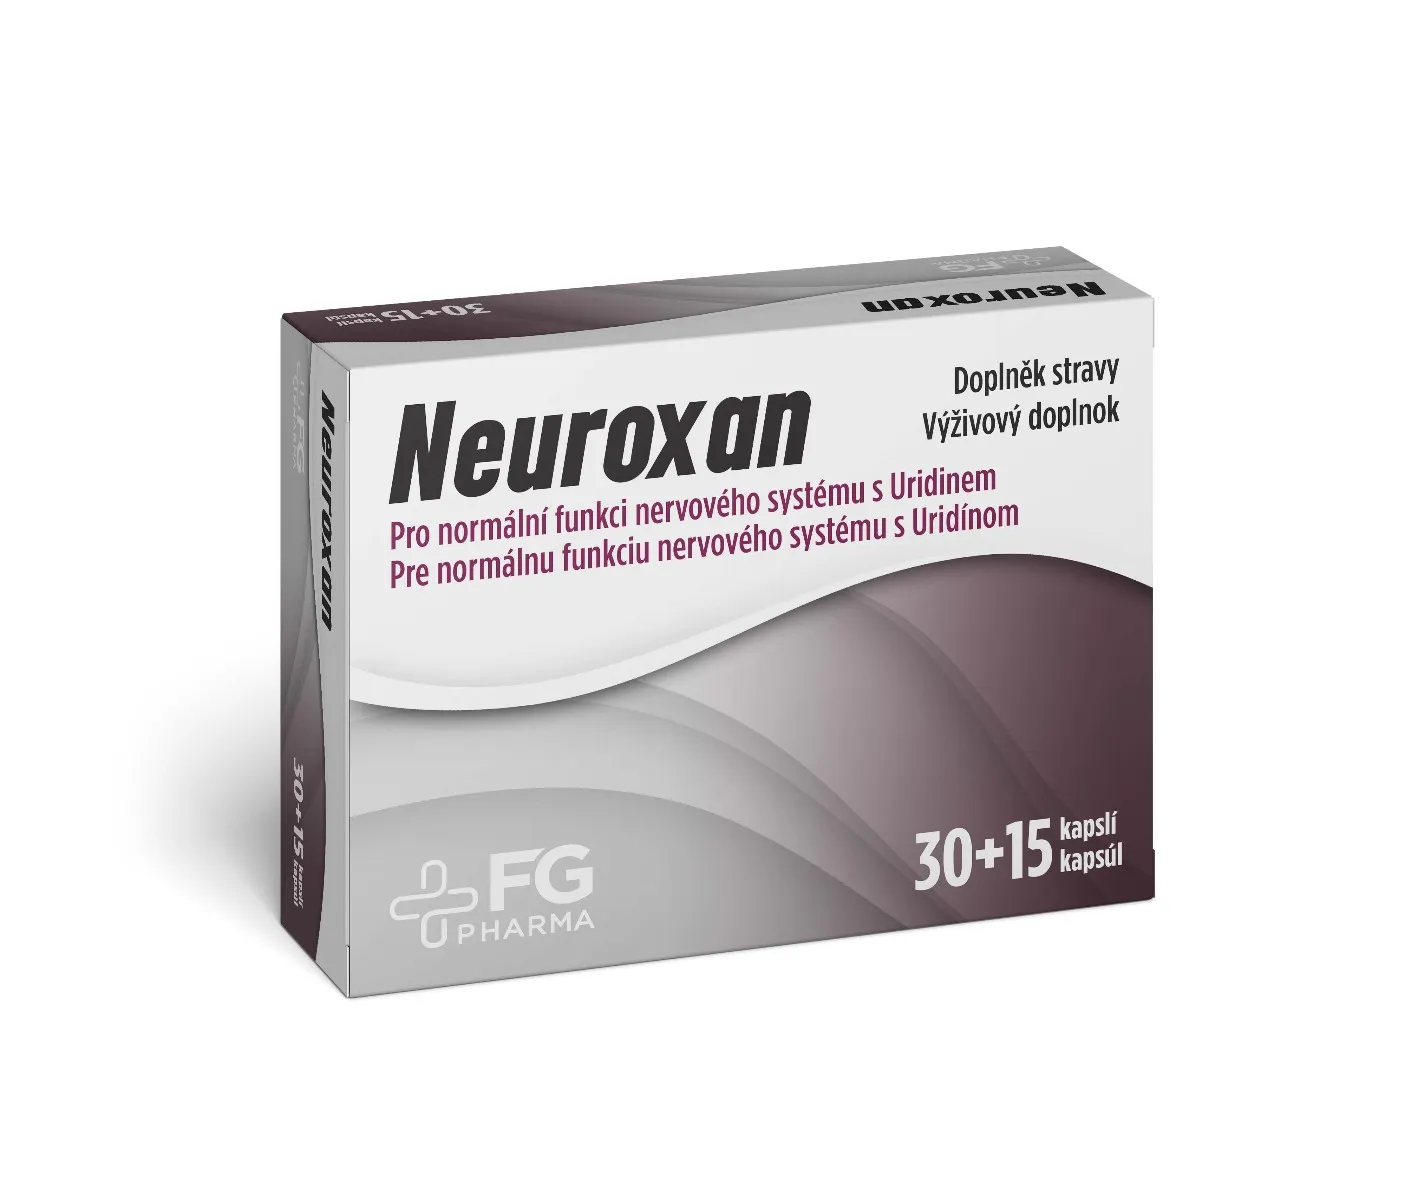 FG Pharma Neuroxan